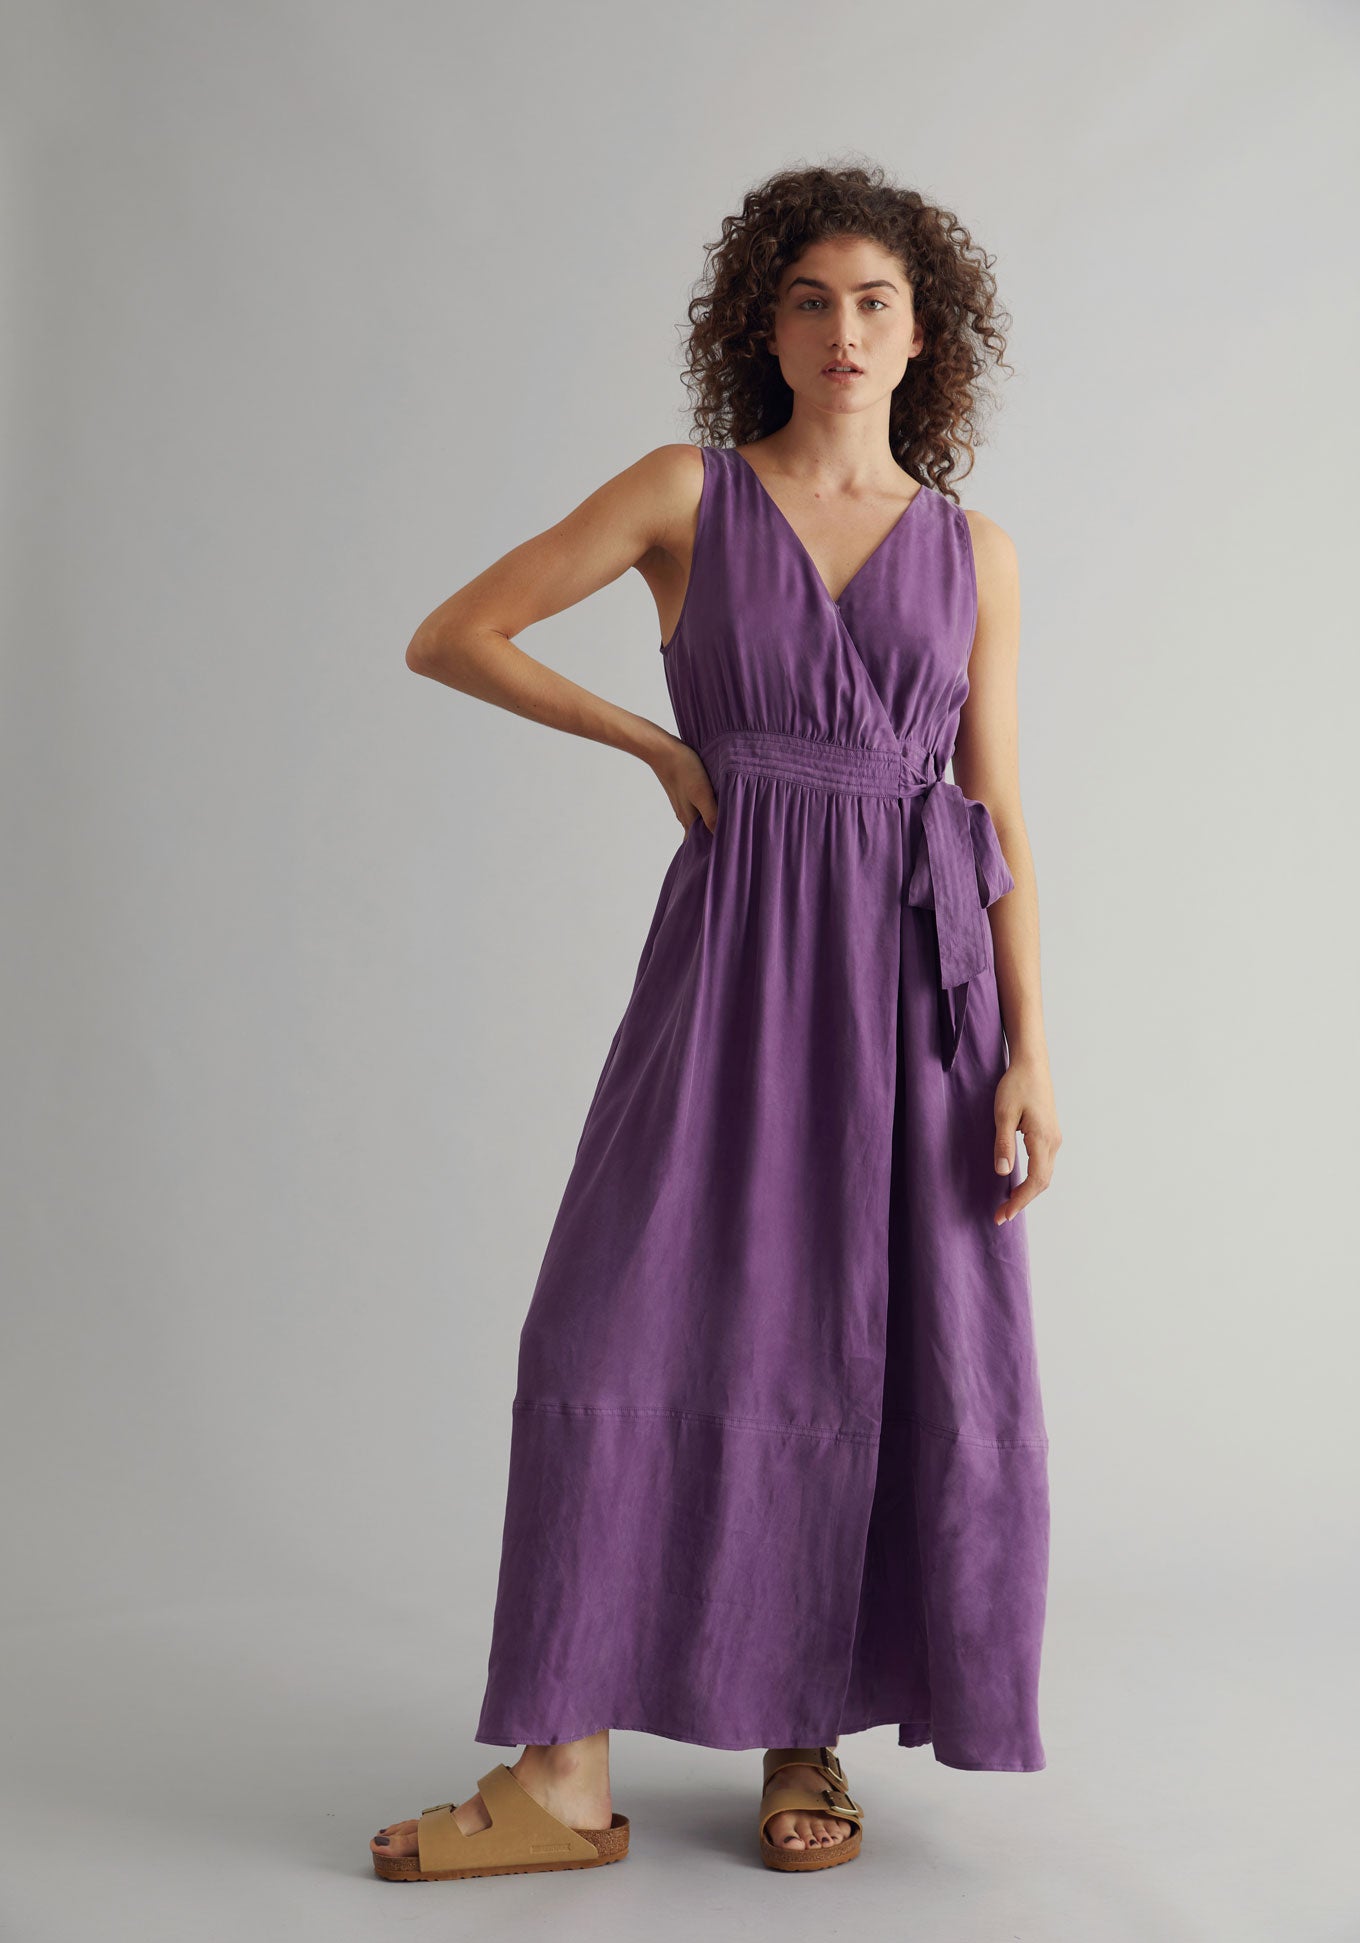 MIKA Dress - Cupro Viscose Purple, SIZE 2 / UK 10 / EUR 38